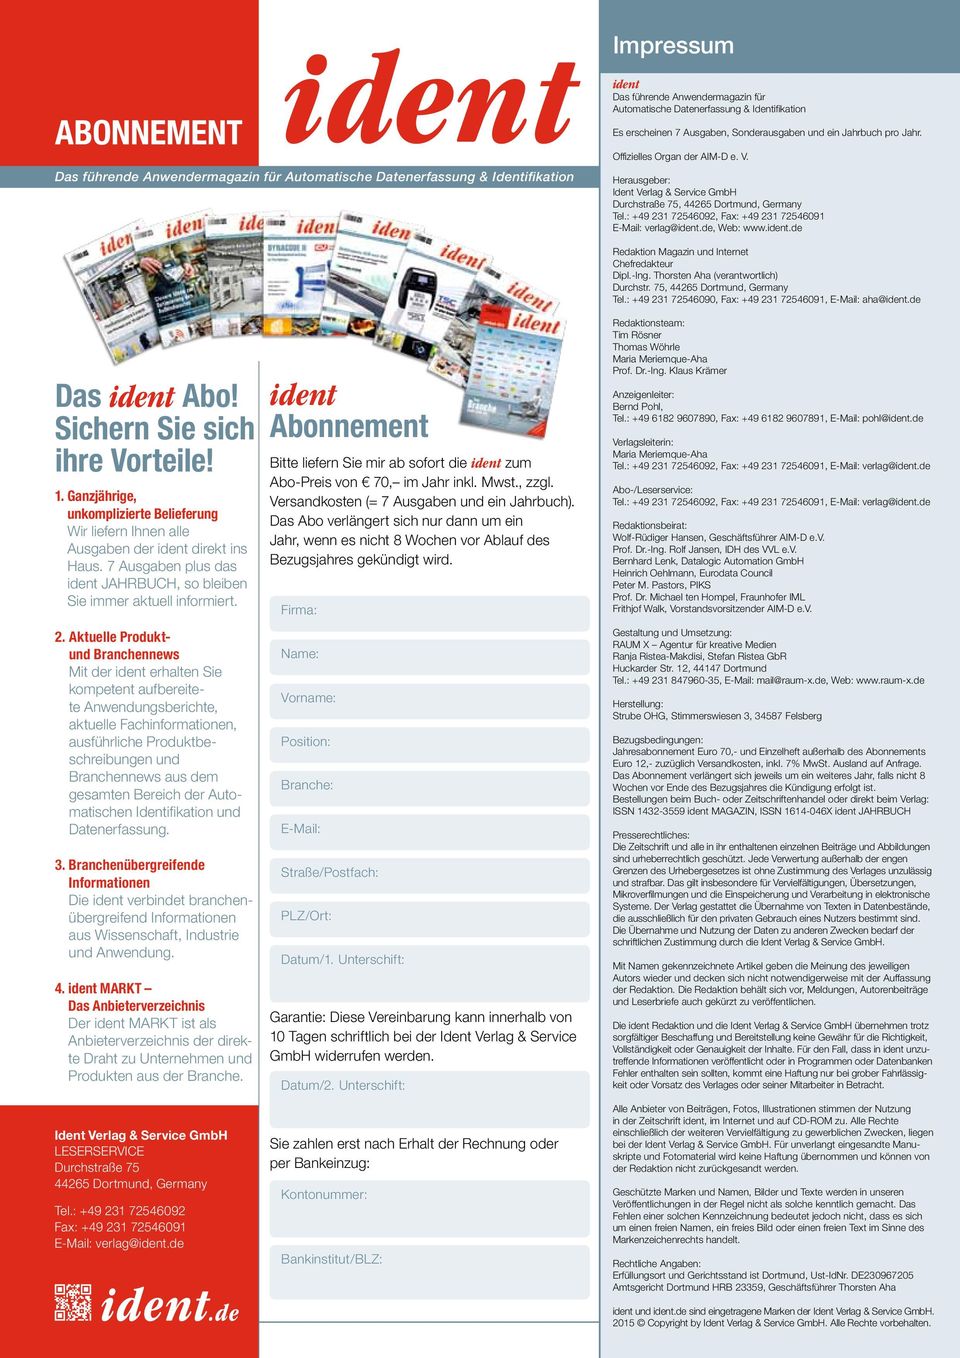 Herausgeber: Ident Verlag & Service GmbH Durchstraße 75, 44265 Dortmund, Germany Tel.: +49 231 72546092, Fax: +49 231 72546091 E-Mail: verlag@ident.de, Web: www.ident.de Das ident Abo!